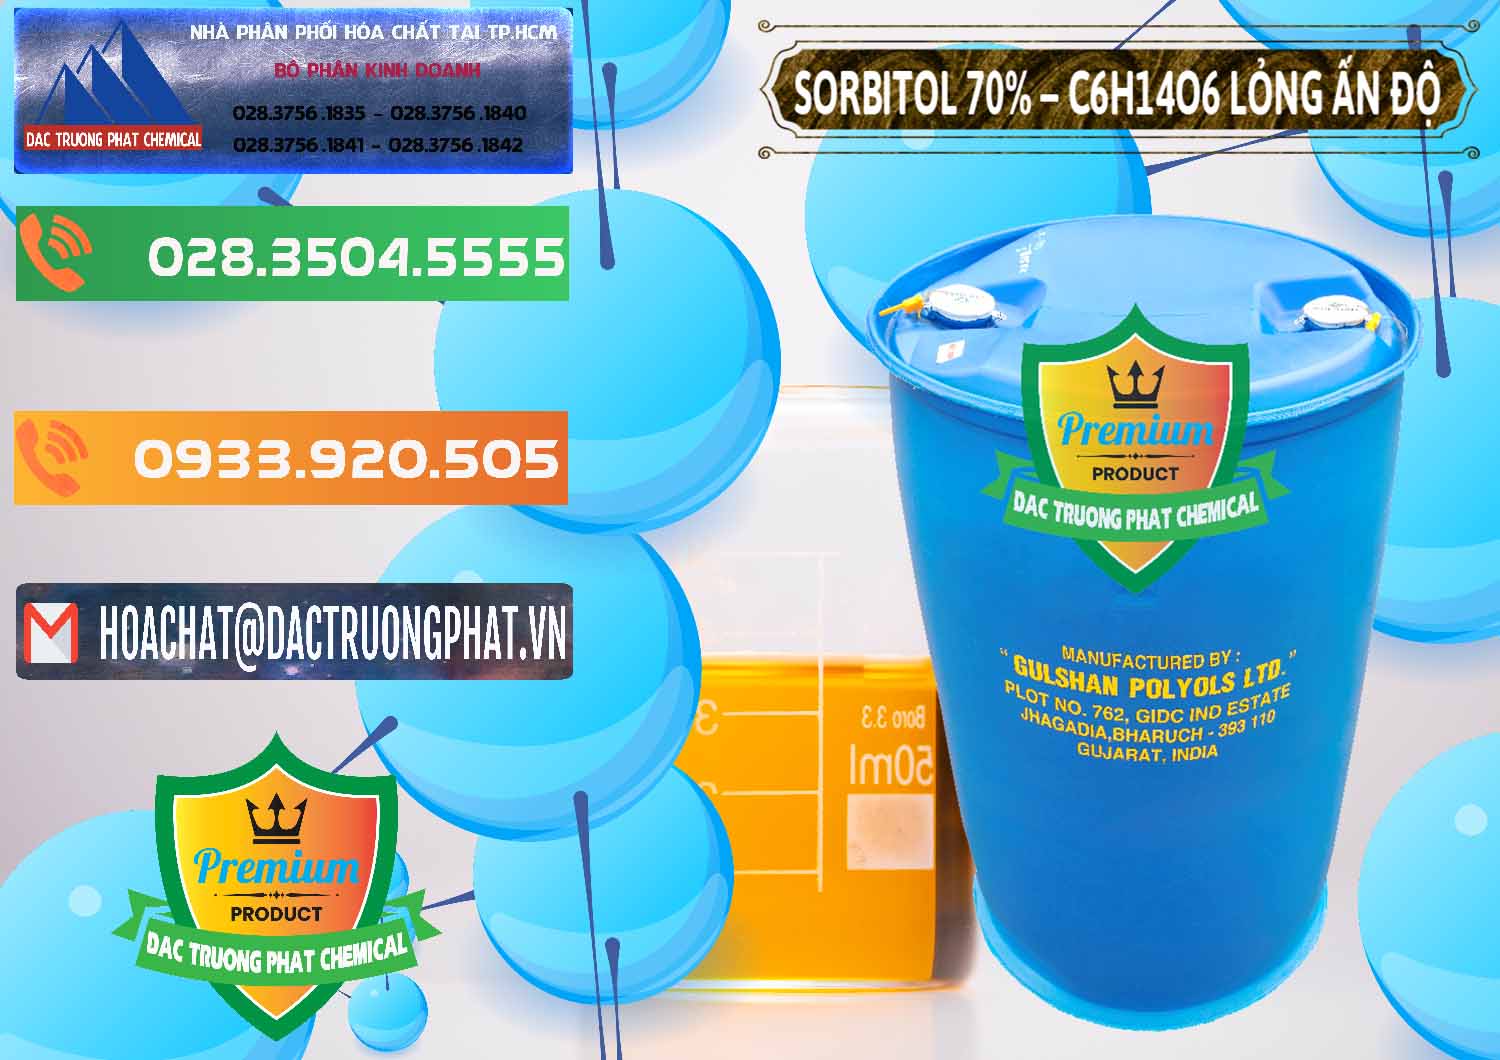 Đơn vị chuyên bán & cung cấp Sorbitol - C6H14O6 Lỏng 70% Food Grade Ấn Độ India - 0152 - Nơi phân phối _ bán hóa chất tại TP.HCM - hoachatxulynuoc.com.vn